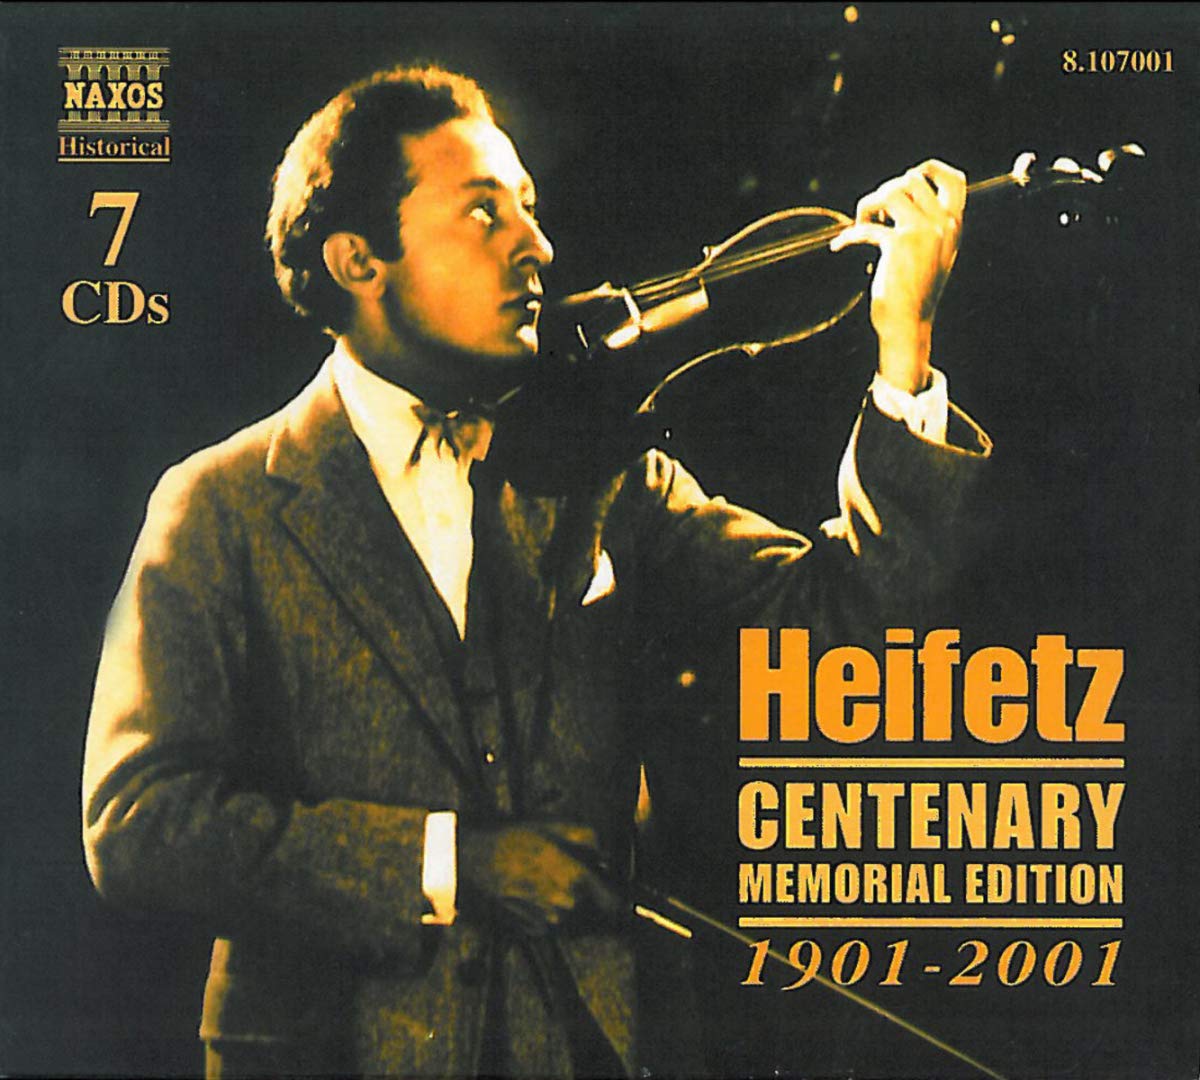 Heifetz Centenary Memorial Edition